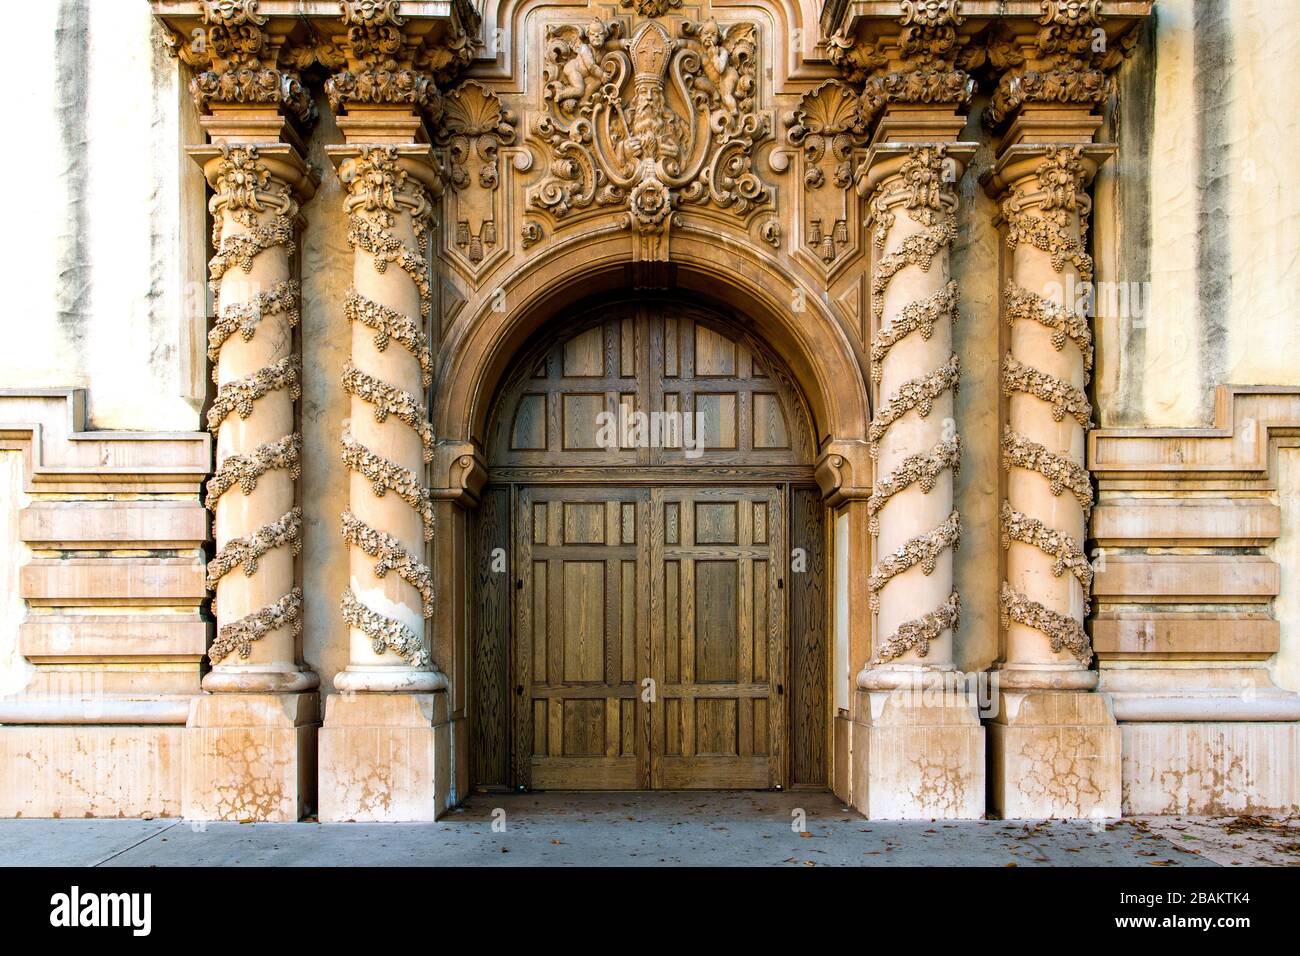 Holzbogentür aus Eiche in einem alten Gebäude, umrahmt von Säulen mit kunstvollen Rokoko- und Architekturelementen aus dem Barock Stockfoto